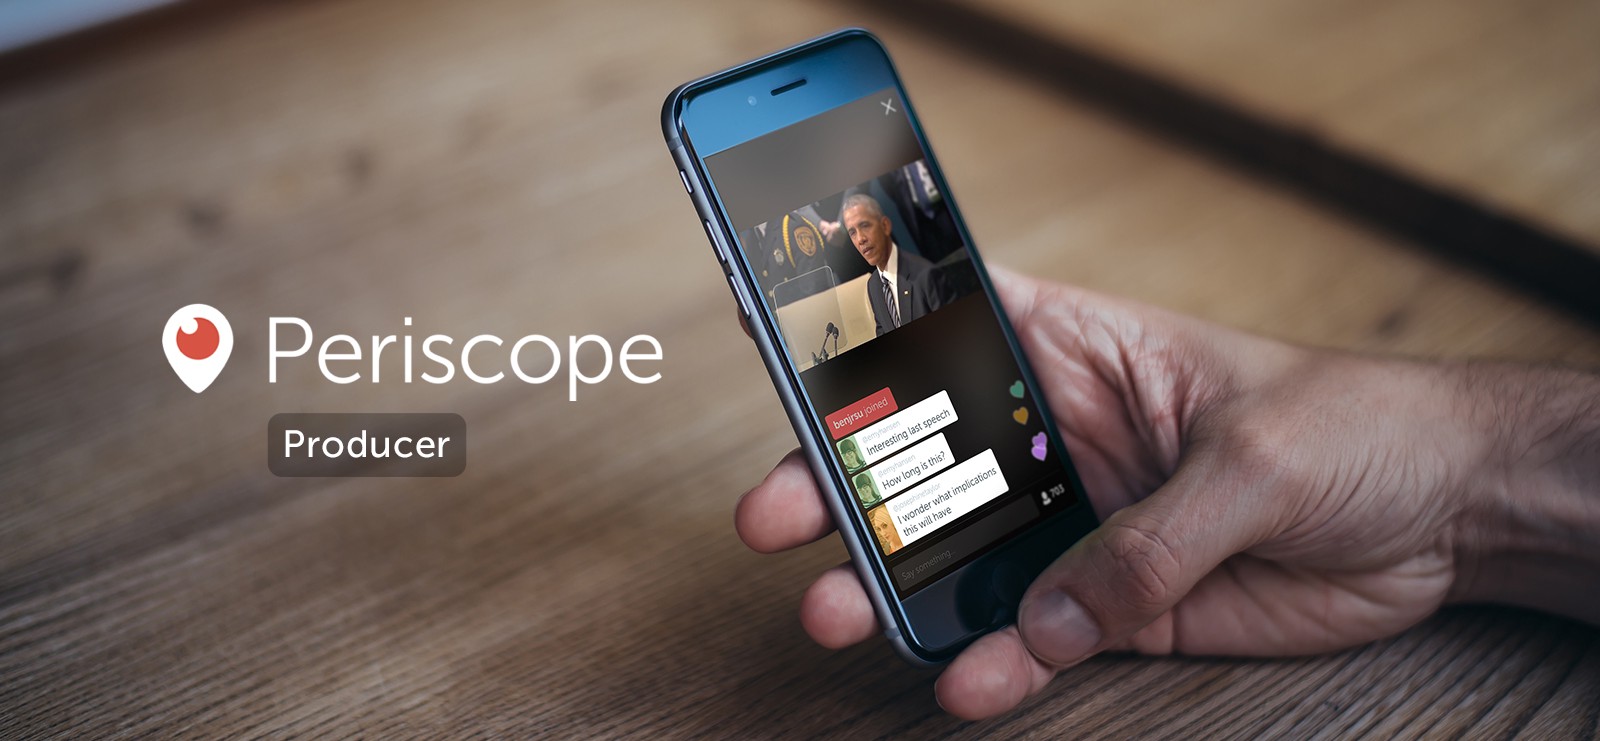 تطبيق Periscope يتيح البث المباشر من مصادر خارجية 4